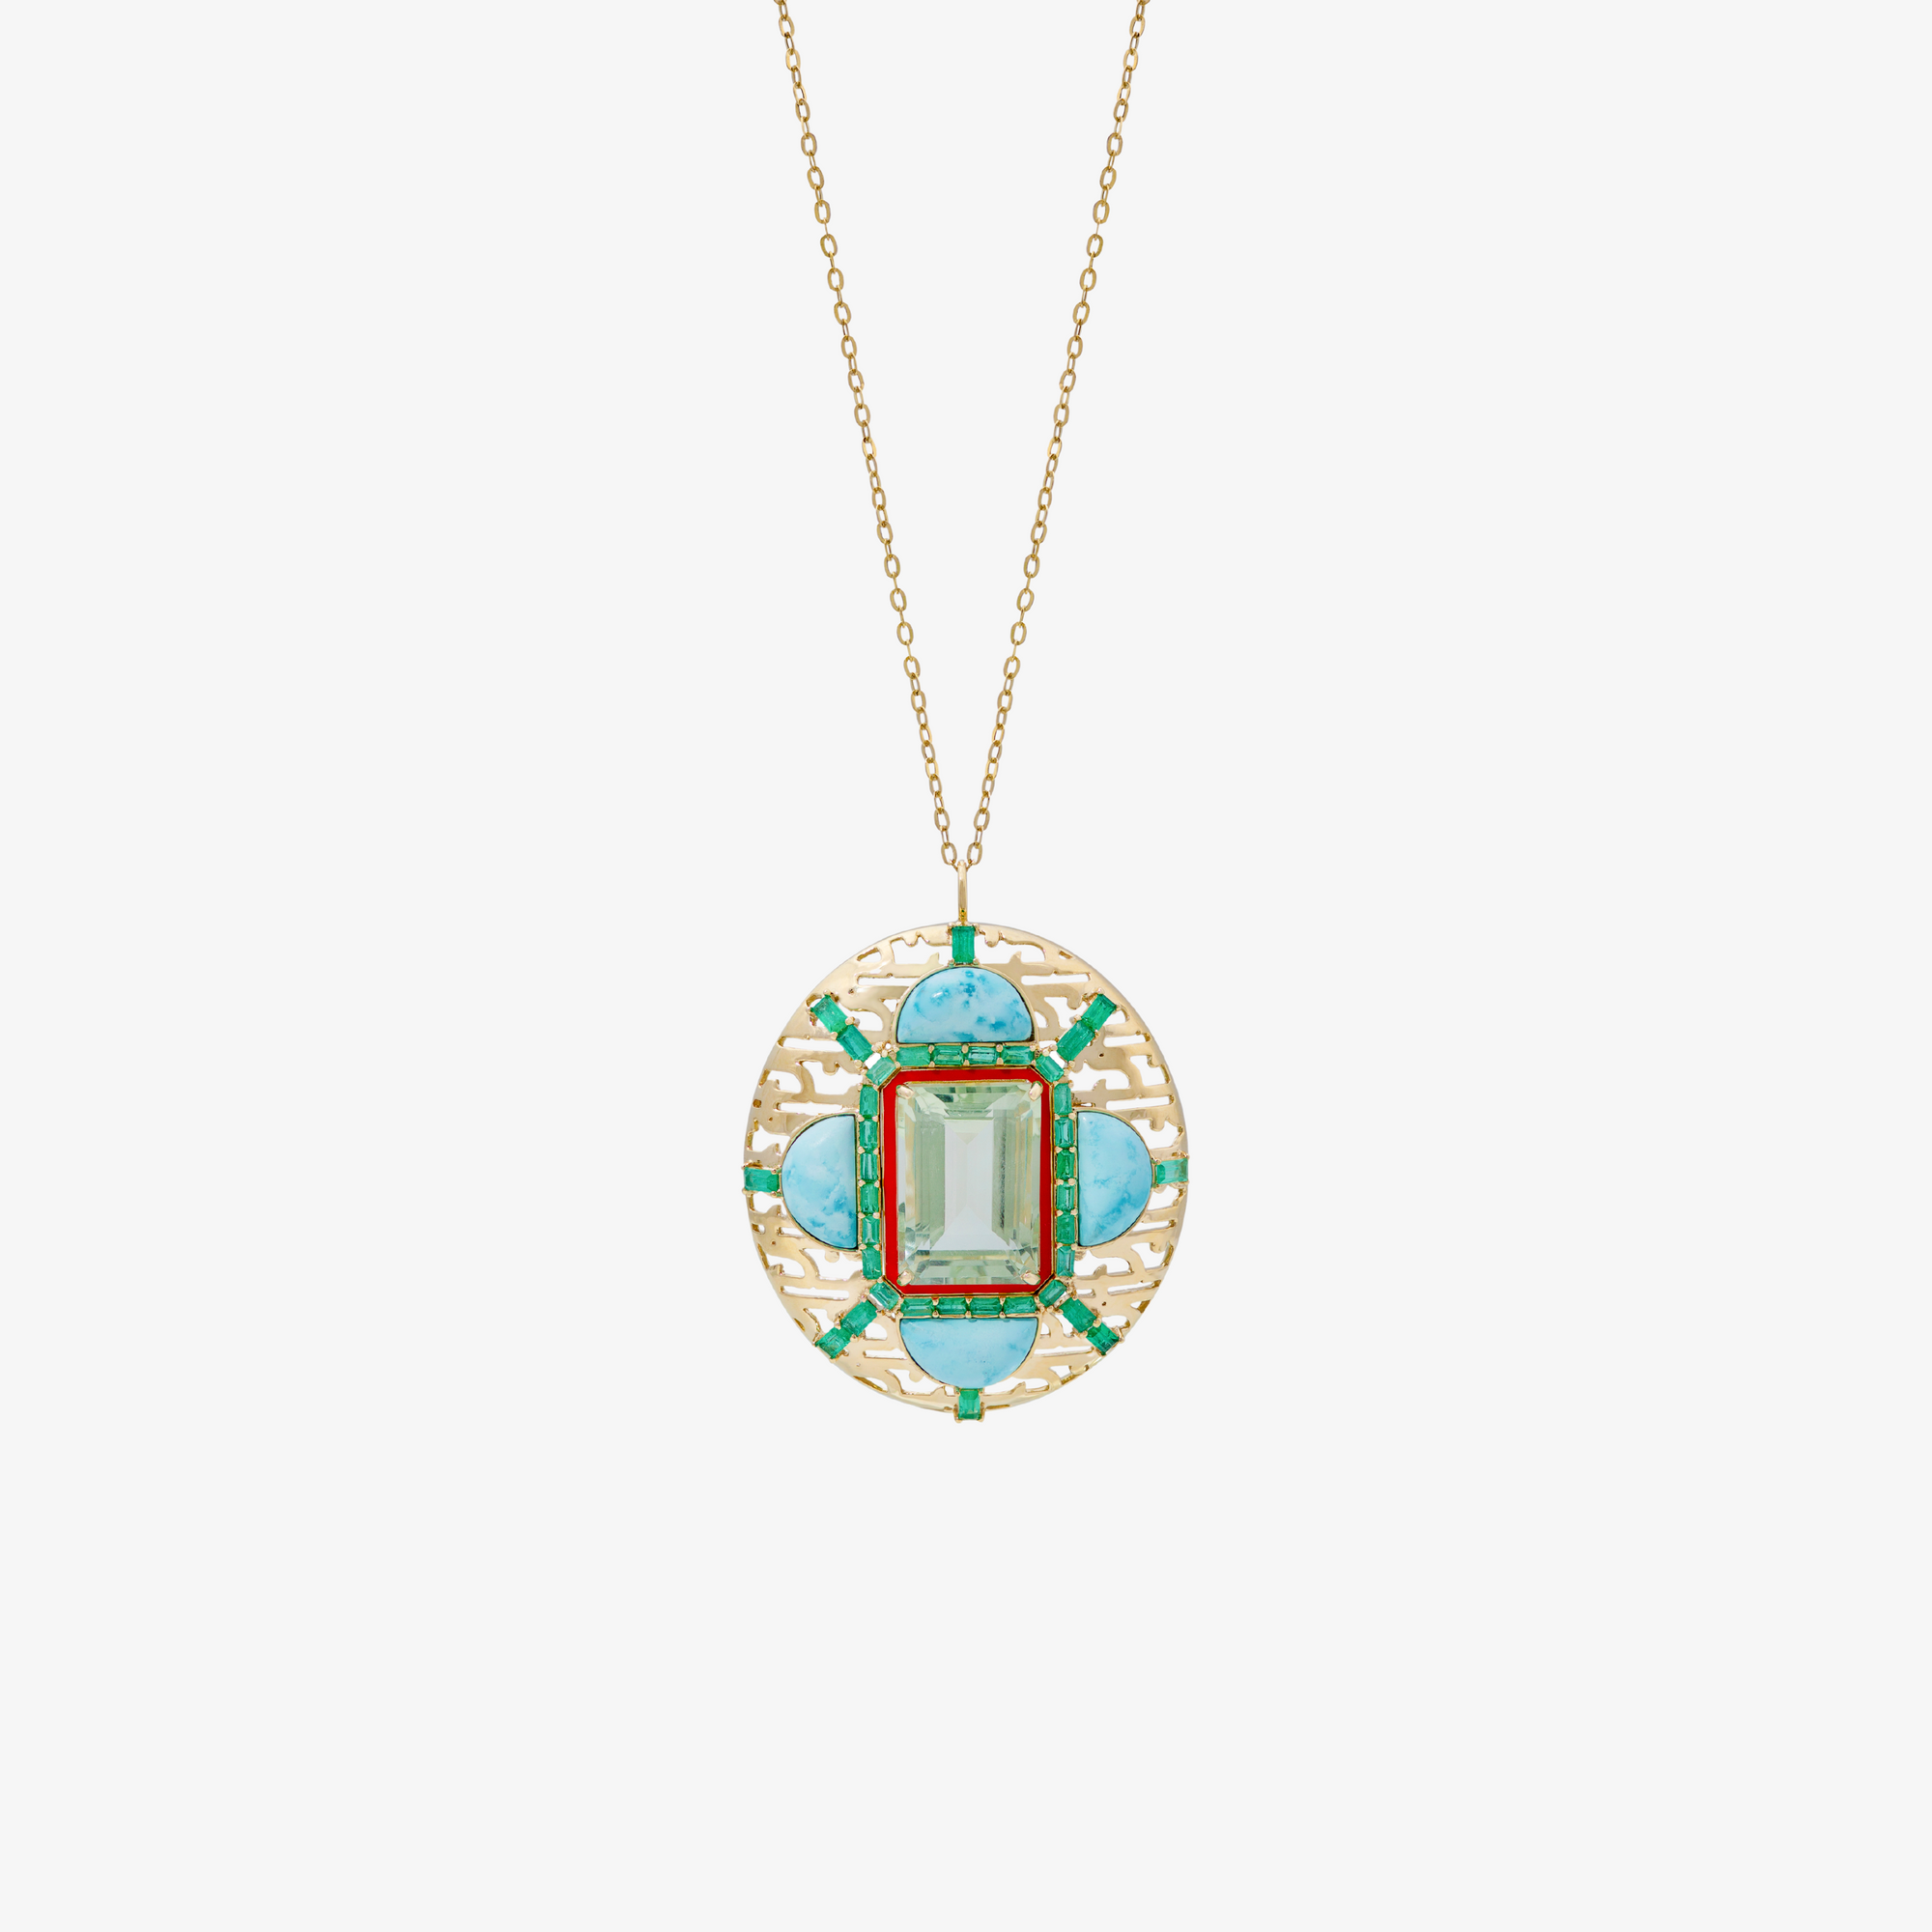 HAWA - 18K Gold, Emerald, Tourmaline & Turquoise Pendant